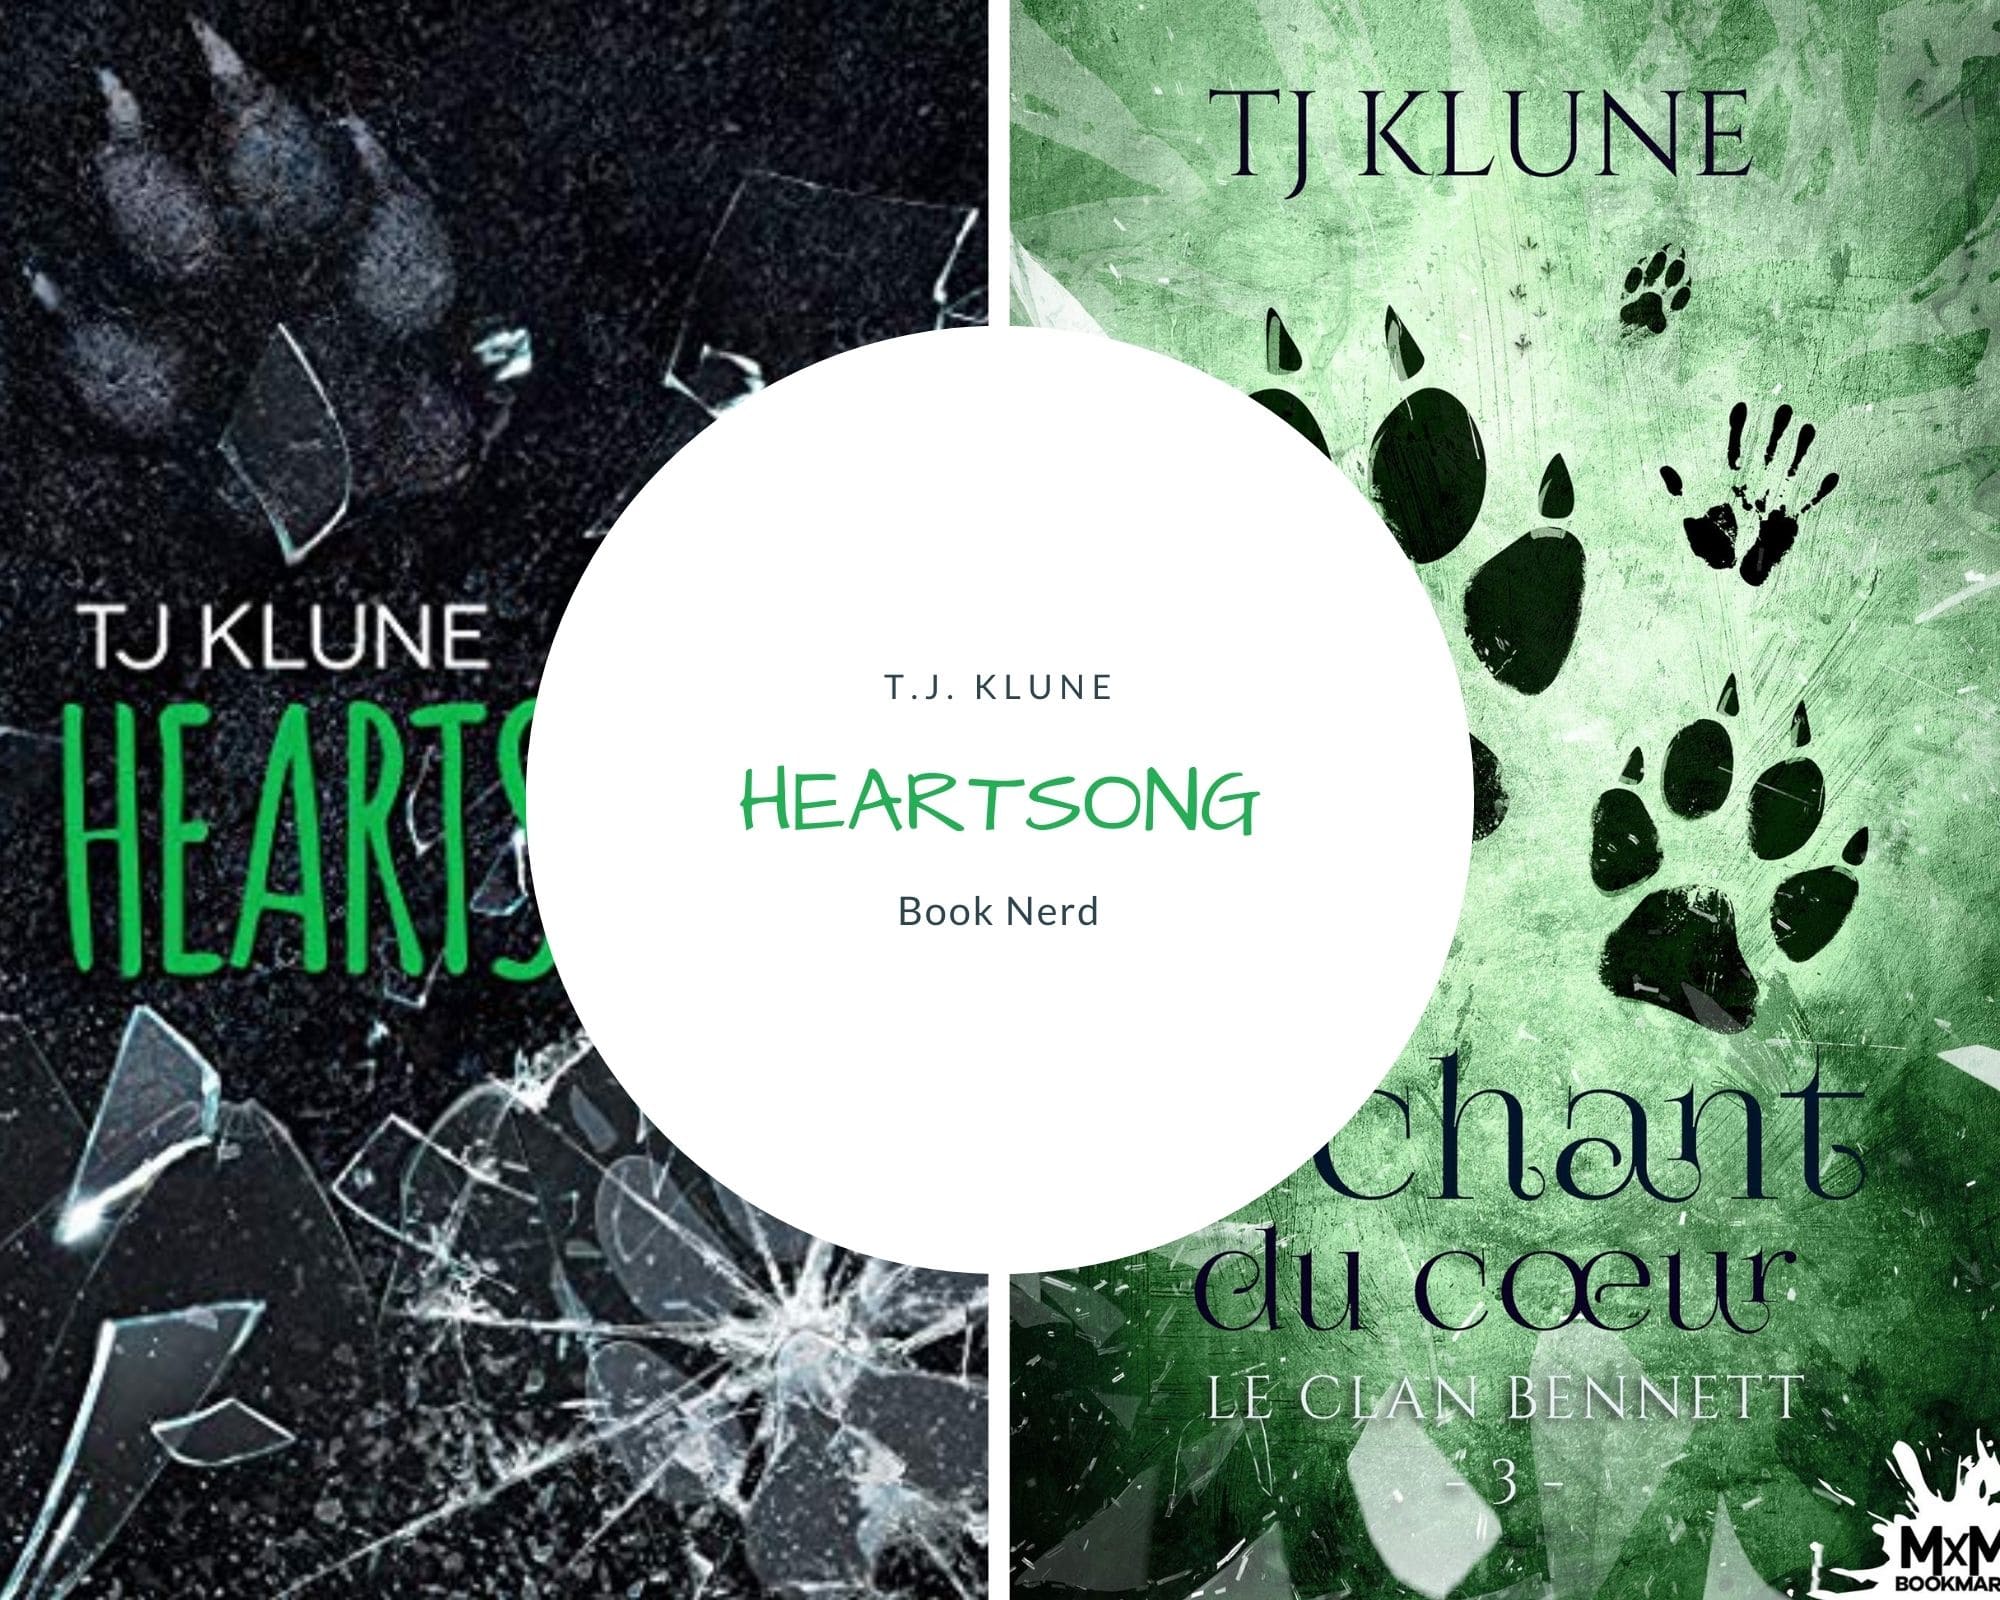 Heartsong - Green Creek #3 - Le Chant du Coeur - Le Clan Bennett #3 - TJ Klune - Résumé & Avis